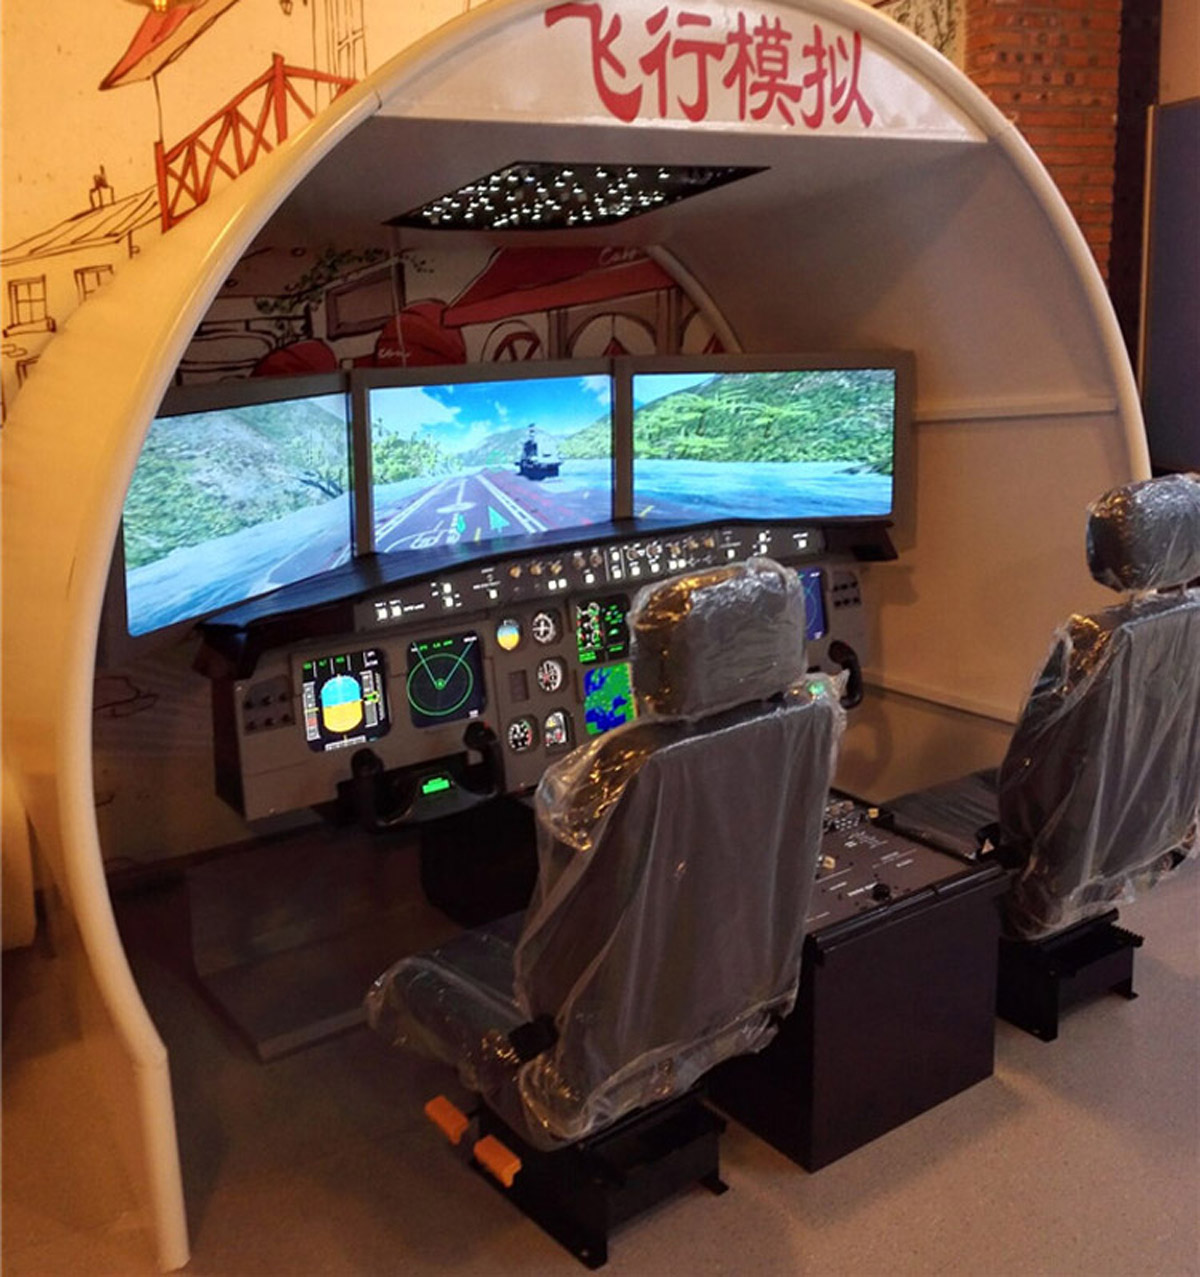 大足区展览展示空客飞行模拟器